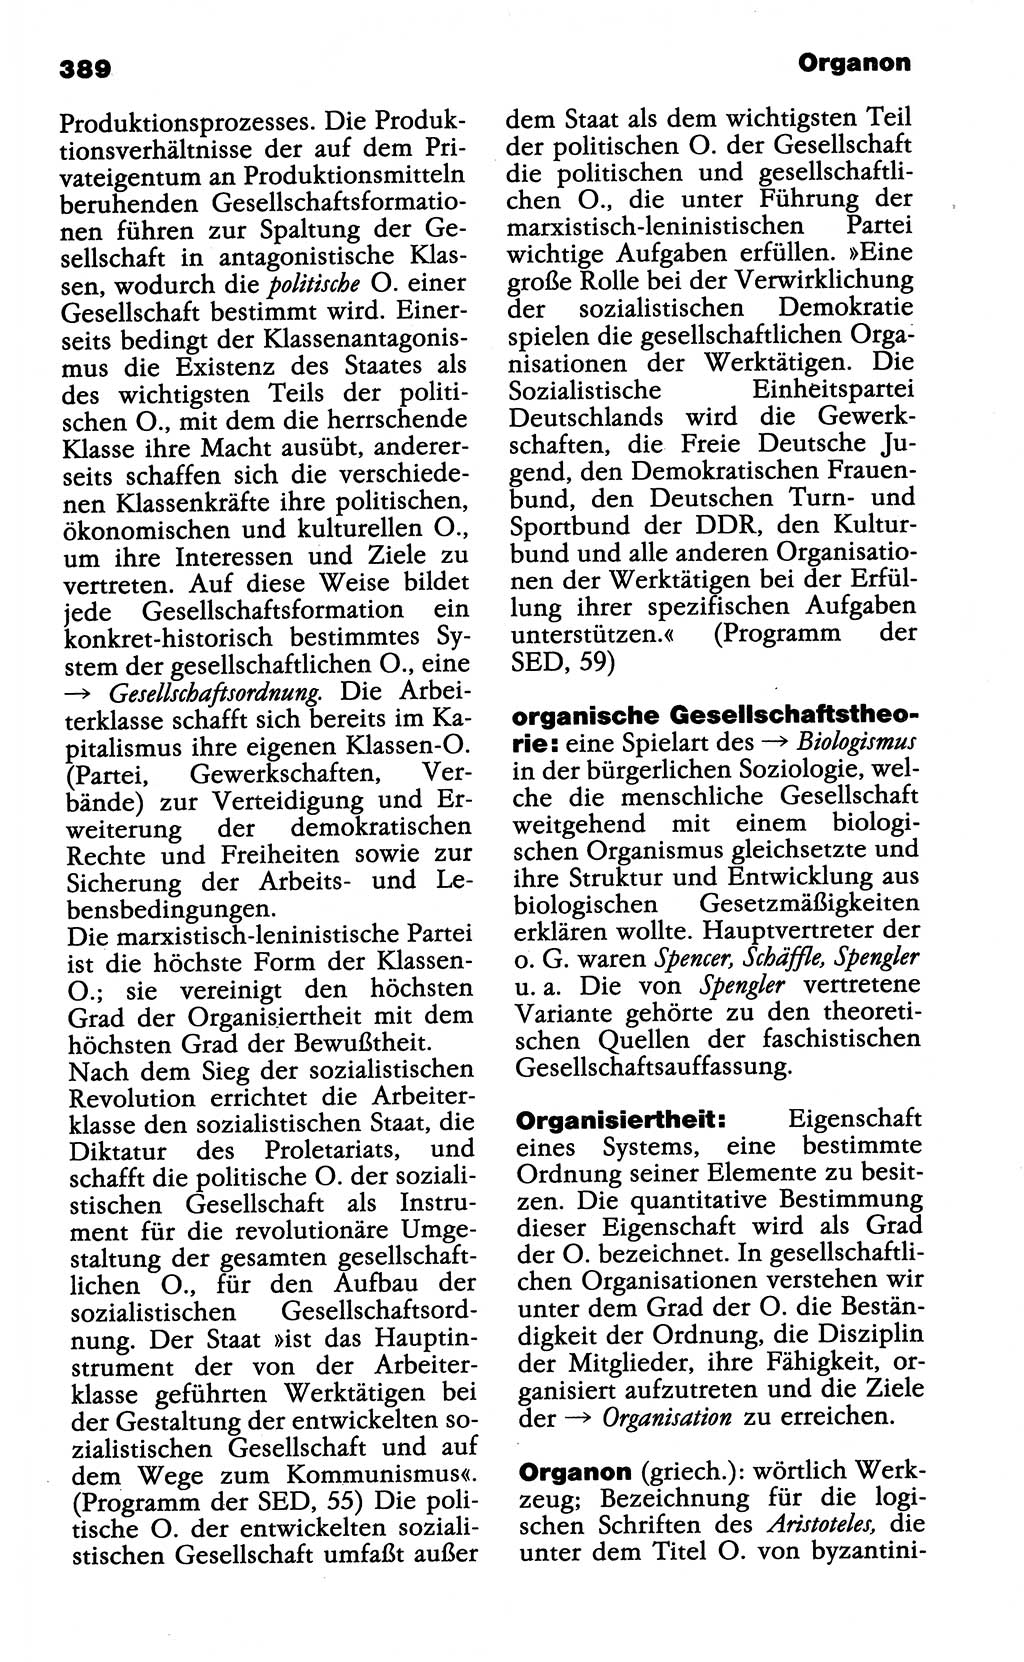 Wörterbuch der marxistisch-leninistischen Philosophie [Deutsche Demokratische Republik (DDR)] 1985, Seite 389 (Wb. ML Phil. DDR 1985, S. 389)